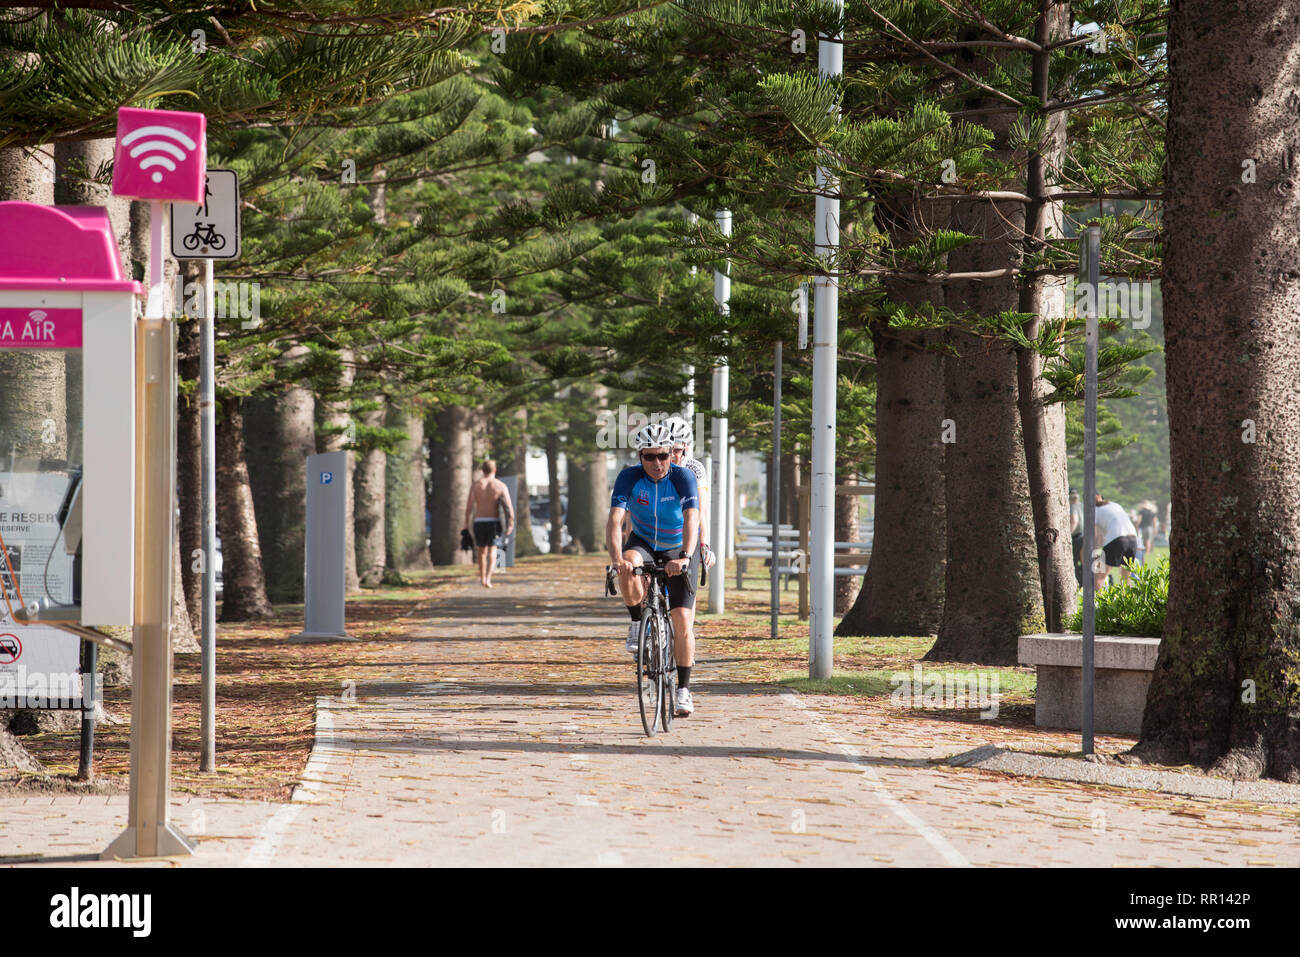 Les cyclistes sur le chemin partagé le long de North Steyne réserver tout juste de retour de la plage à Sydney Manly Beach, New South Wales, Australie Banque D'Images